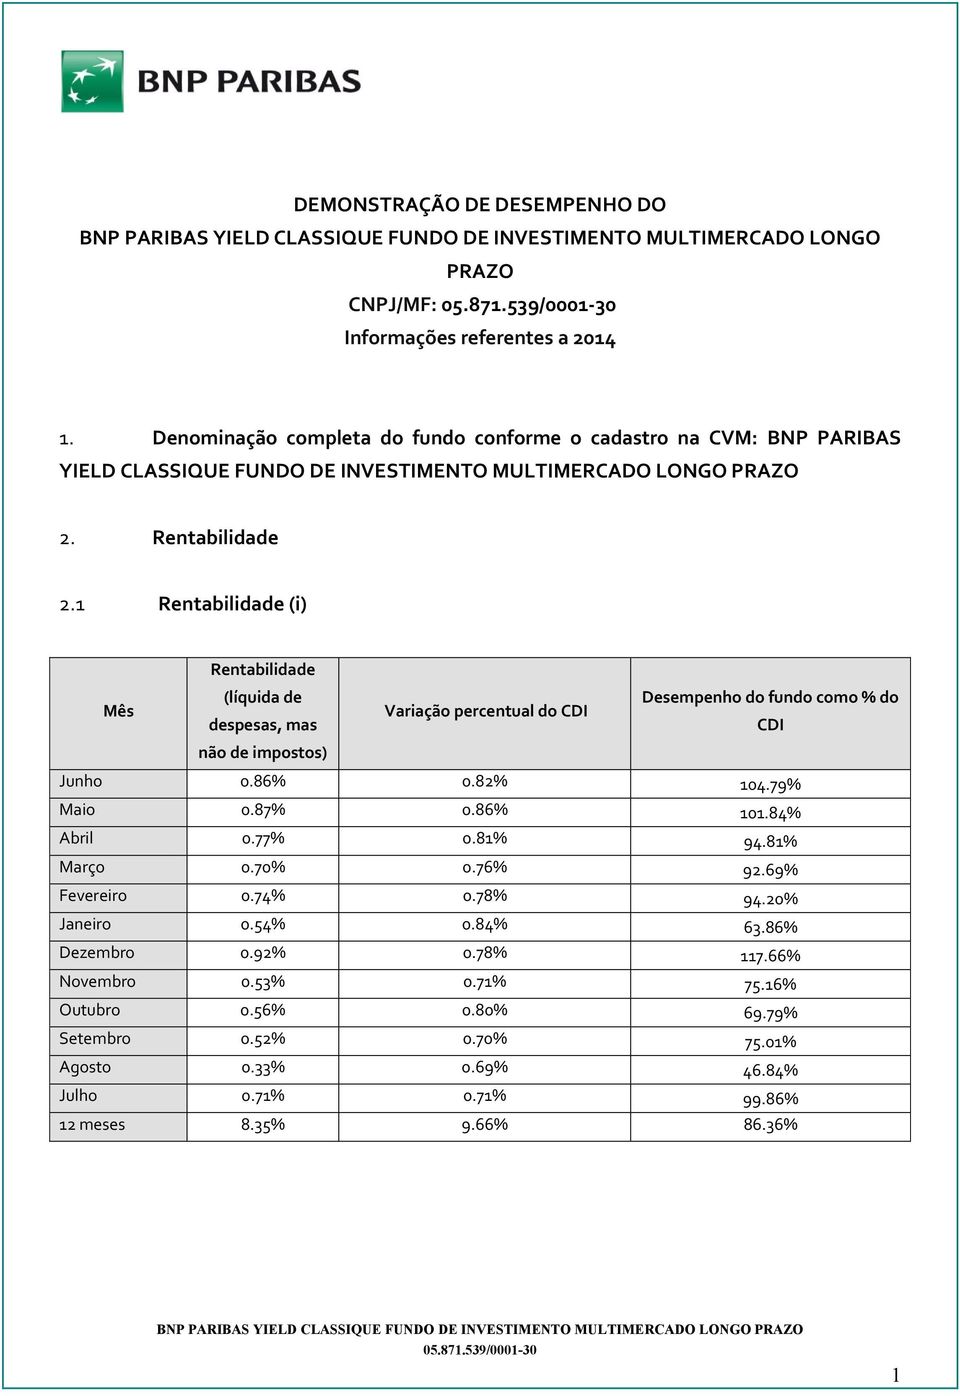 1 Rentabilidade (i) Rentabilidade Mês (líquida de despesas, mas Variação percentual do CDI Desempenho do fundo como % do CDI não de impostos) Junho 0.86% 0.82% 104.79% Maio 0.87% 0.86% 101.